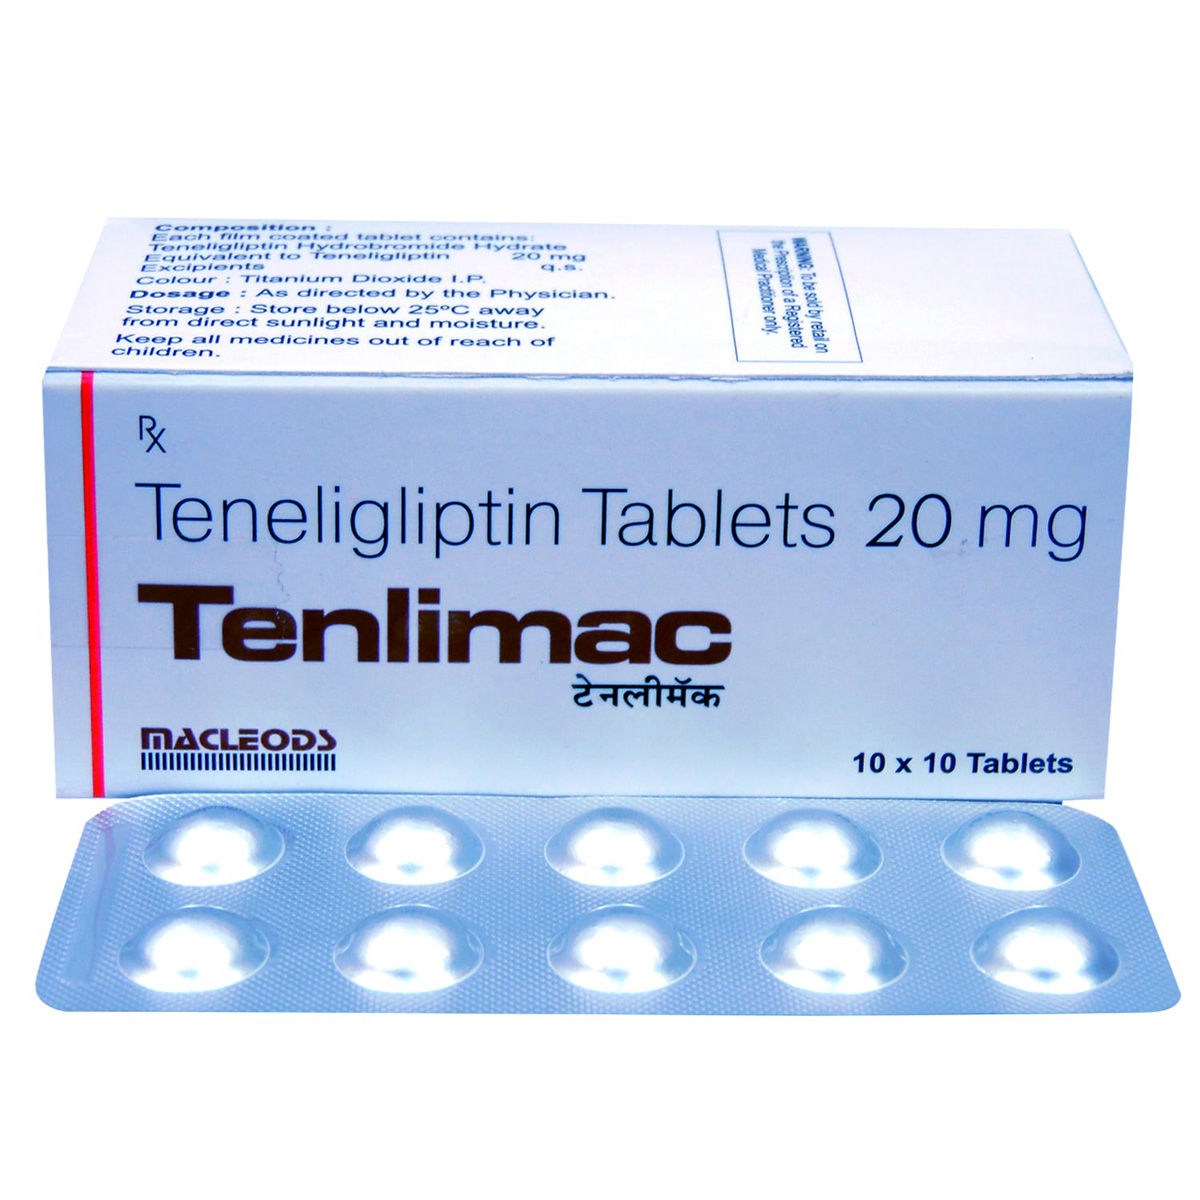 Buy Tenlimac 20 Tablet 10's Online